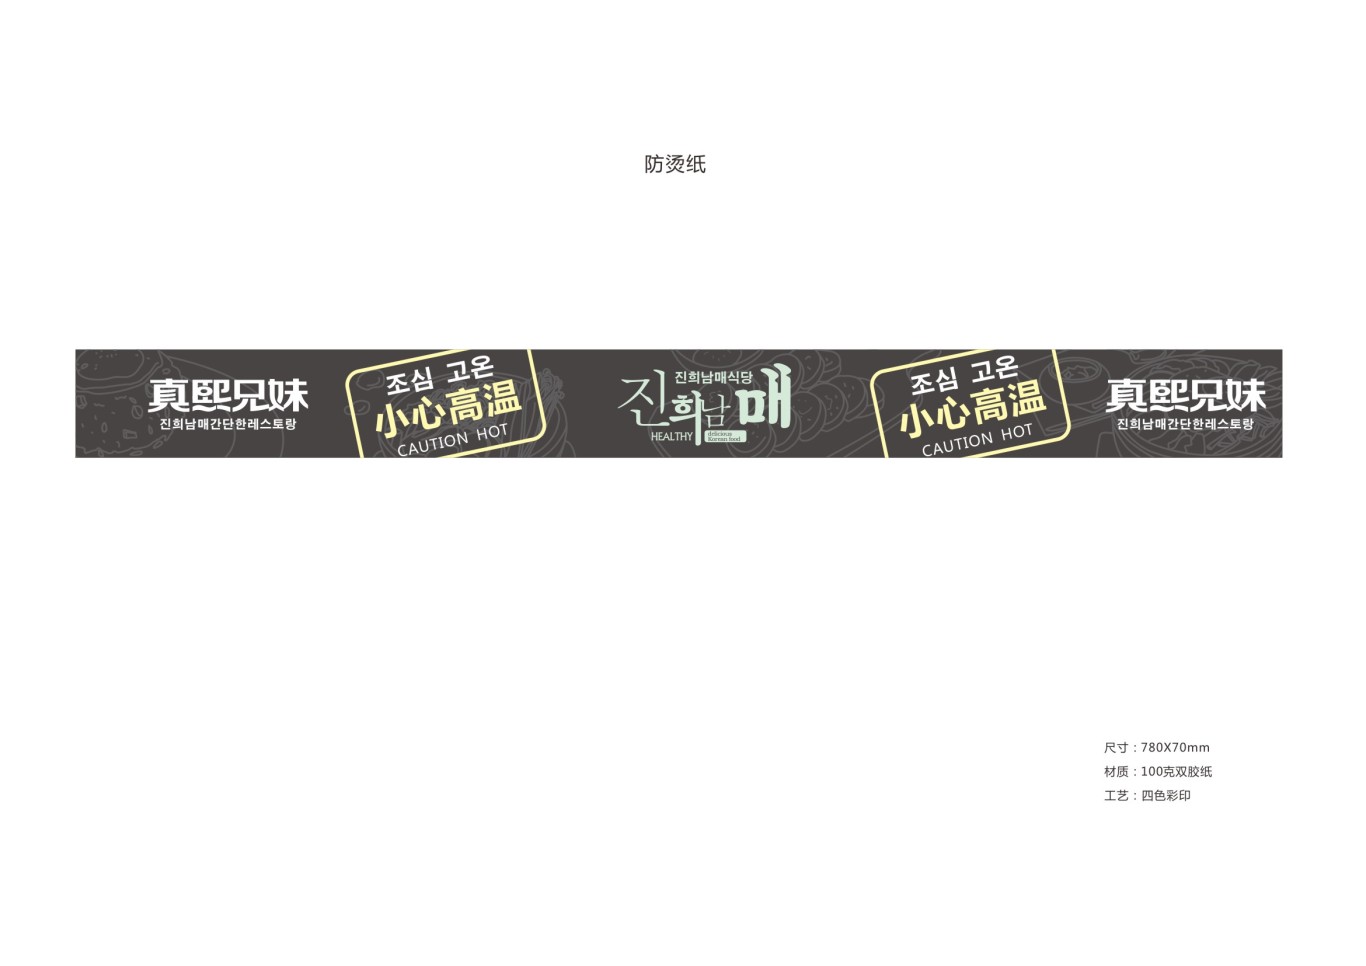 韩式简餐连锁品牌设计图40